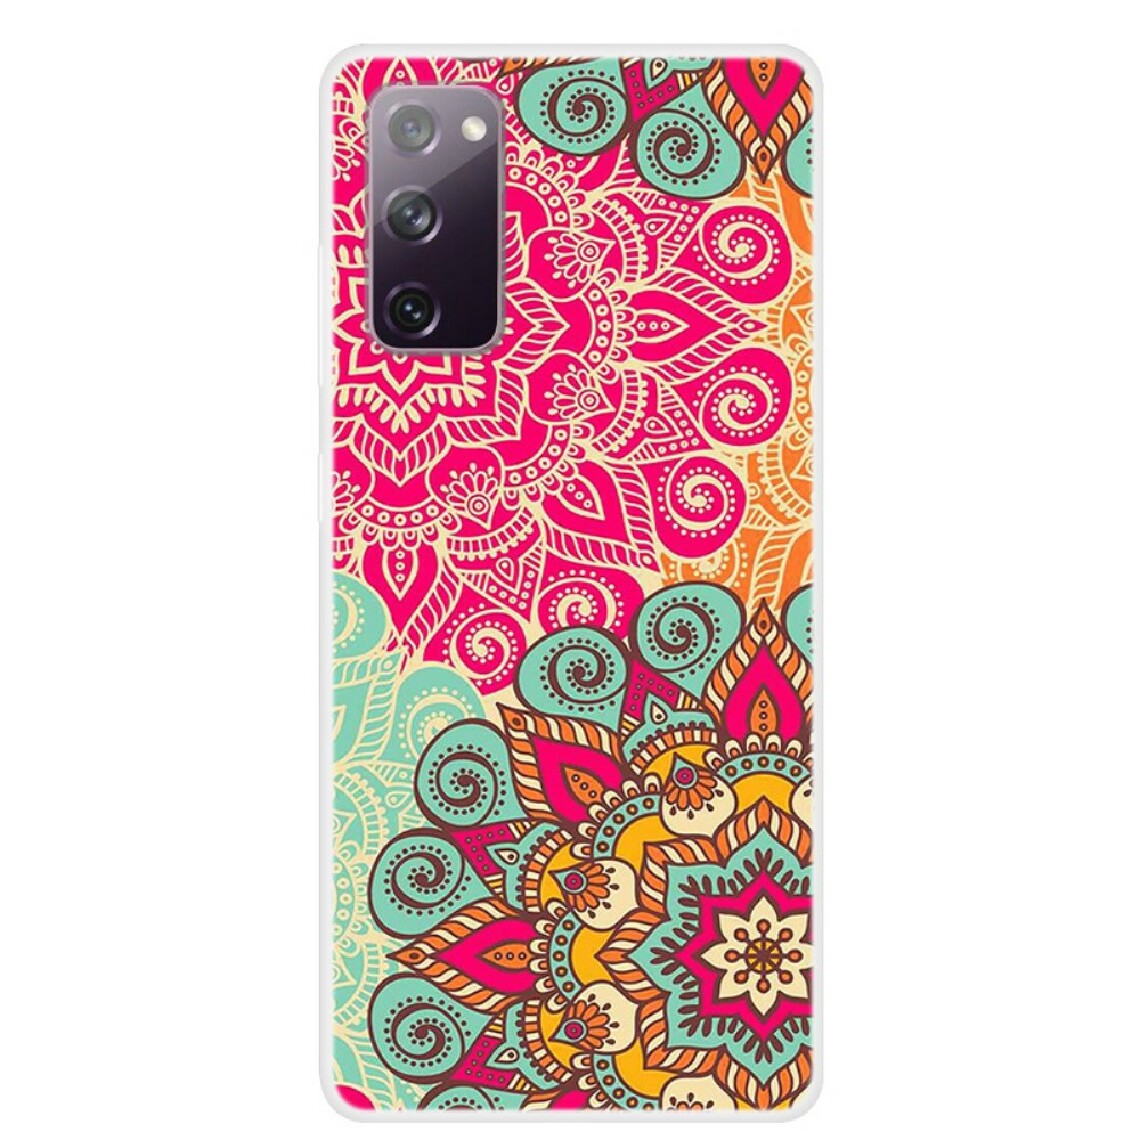 Other - Coque en TPU impression de motifs fleur rouge pour votre Samsung Galaxy S20 FE 5G/S20 FE - Coque, étui smartphone